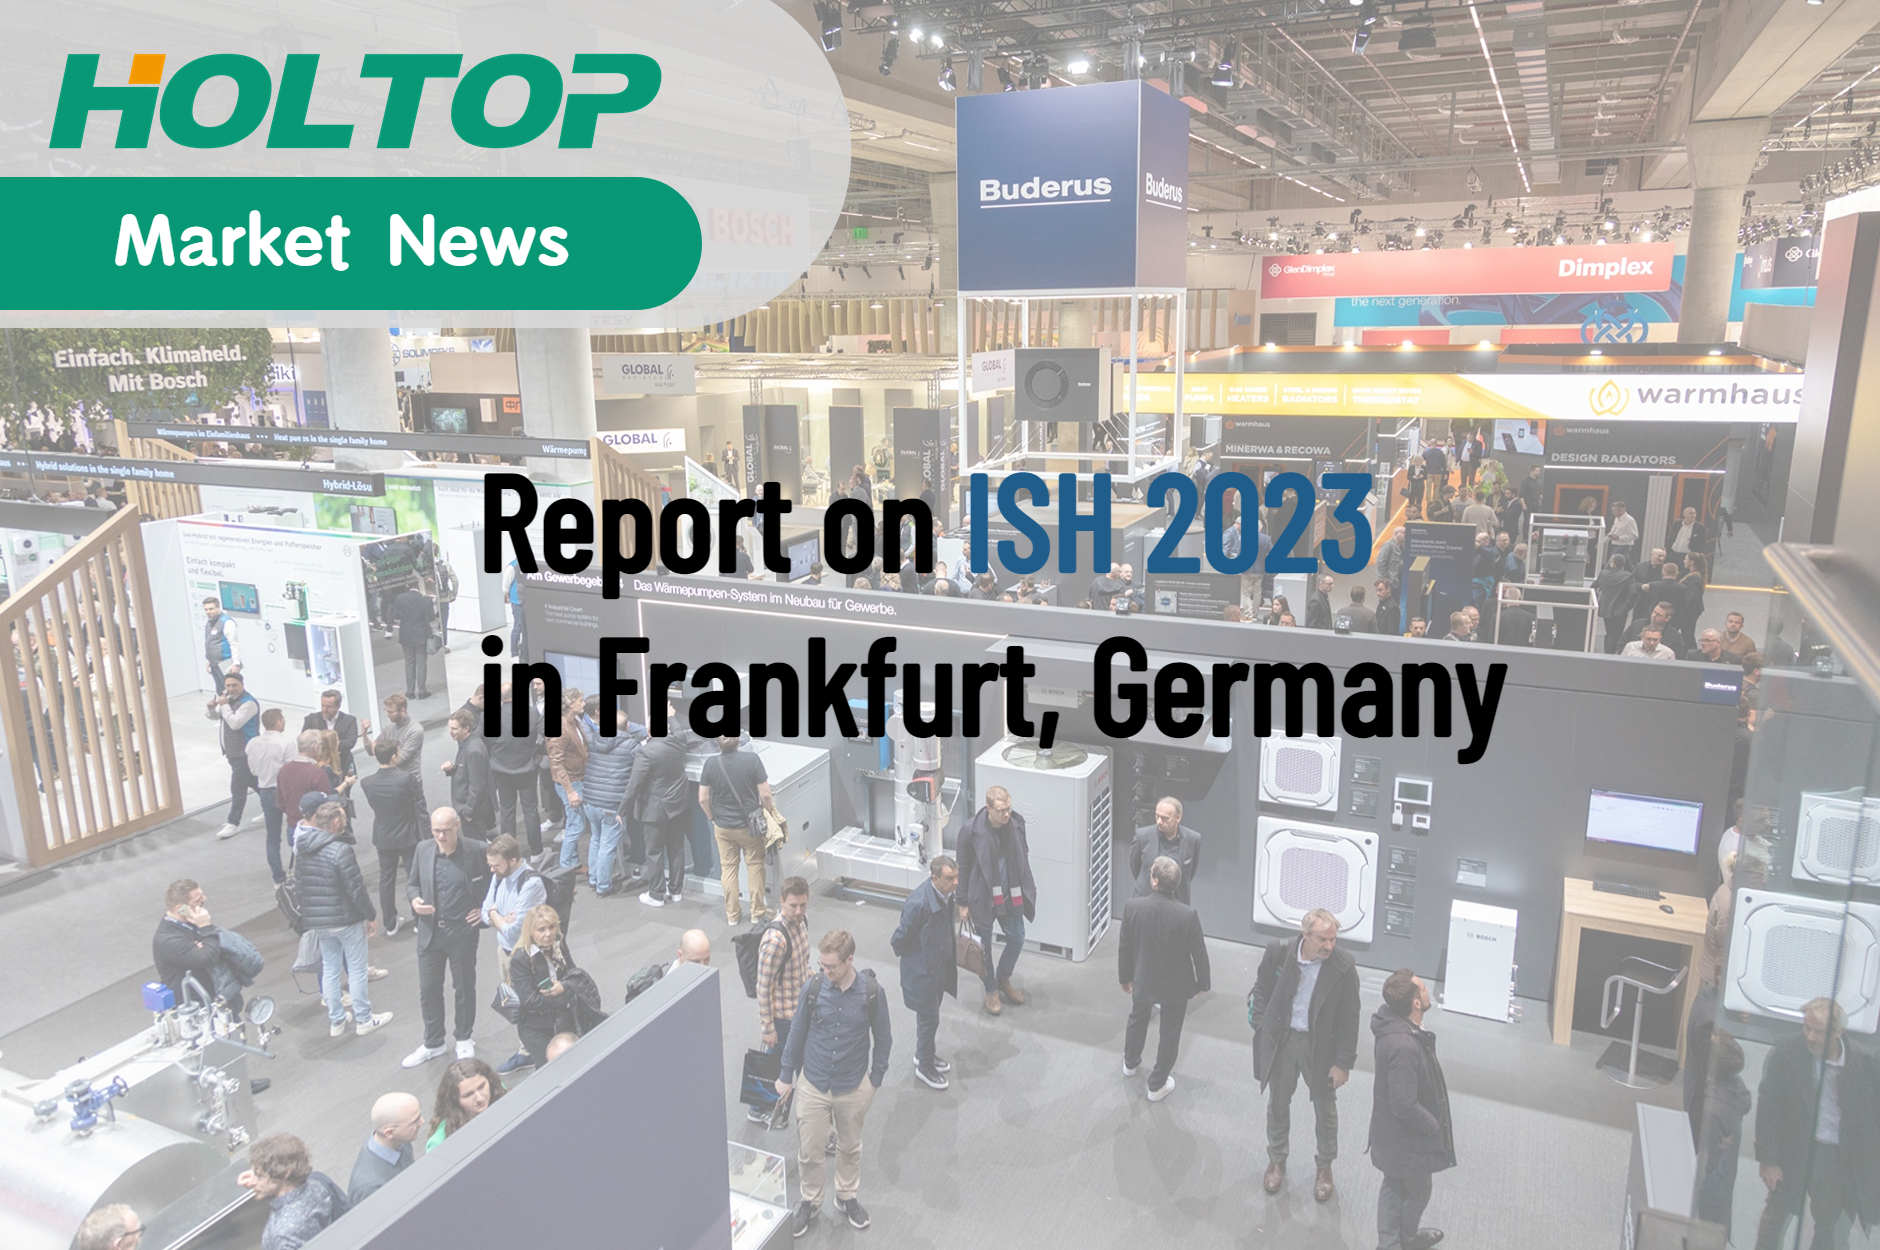 Uma revolução na indústria europeia de aquecimento - Relatório sobre ISH 2023 em Frankfurt, Alemanha